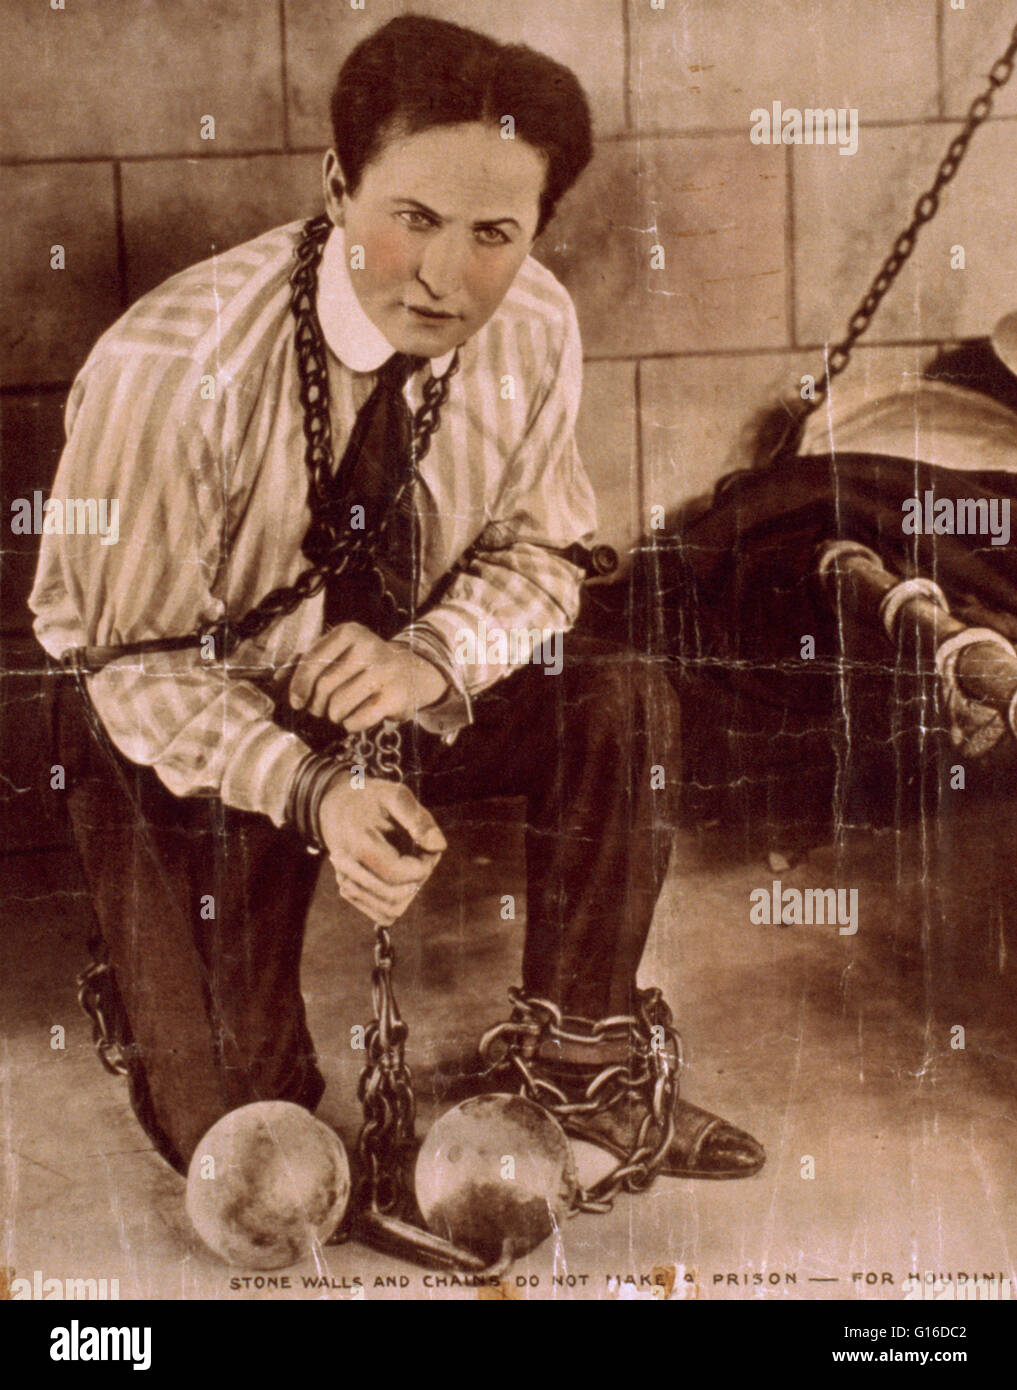 Intitulé : "les murs ton et les chaînes ne font pas de prison pour Houdini' créé par 'célèbre Players-Lasky Corporation', 1919. Houdini a suivi sa performance dans 'Le capitaine mystère" avec le jeu "Sombre", le premier de deux films qu'il a fait pour les joueurs célèbres. Banque D'Images